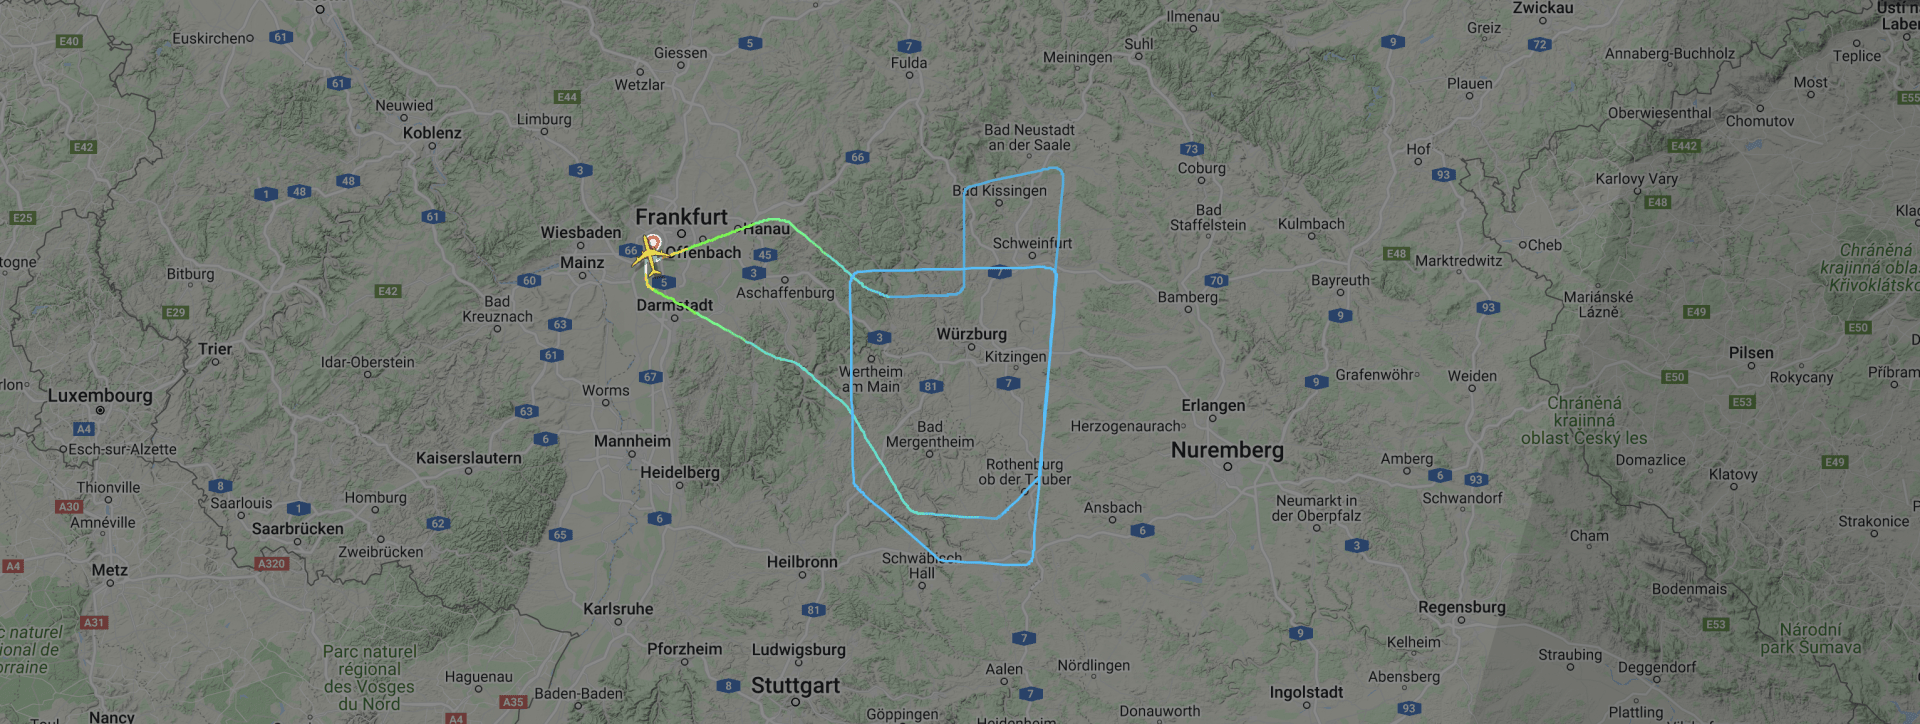 Záznam letu německé společnosti Lufthansa s označením LH 778 z Frankfurtu nad Mohanem do Singapuru. Letadlo se před Norimberkem nedaleko českých hranic odklonilo od řádného kursu a během několika otoček vyprazdňovalo nádrže s kerosinem.